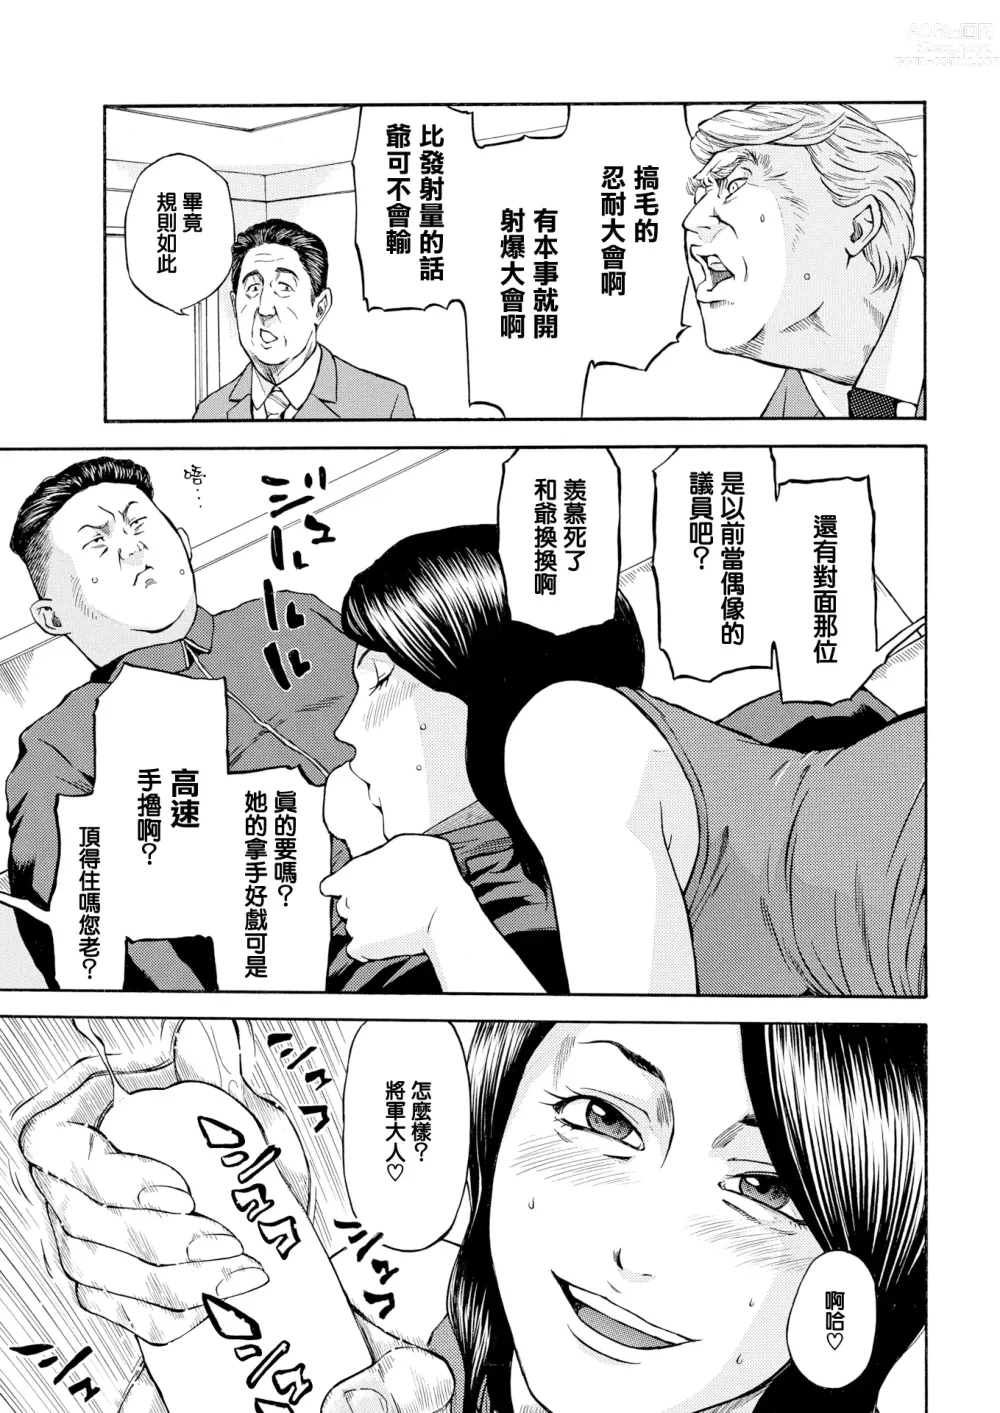 Page 4 of manga Daiikkai Chikichiki Hassha Gaman Taikai